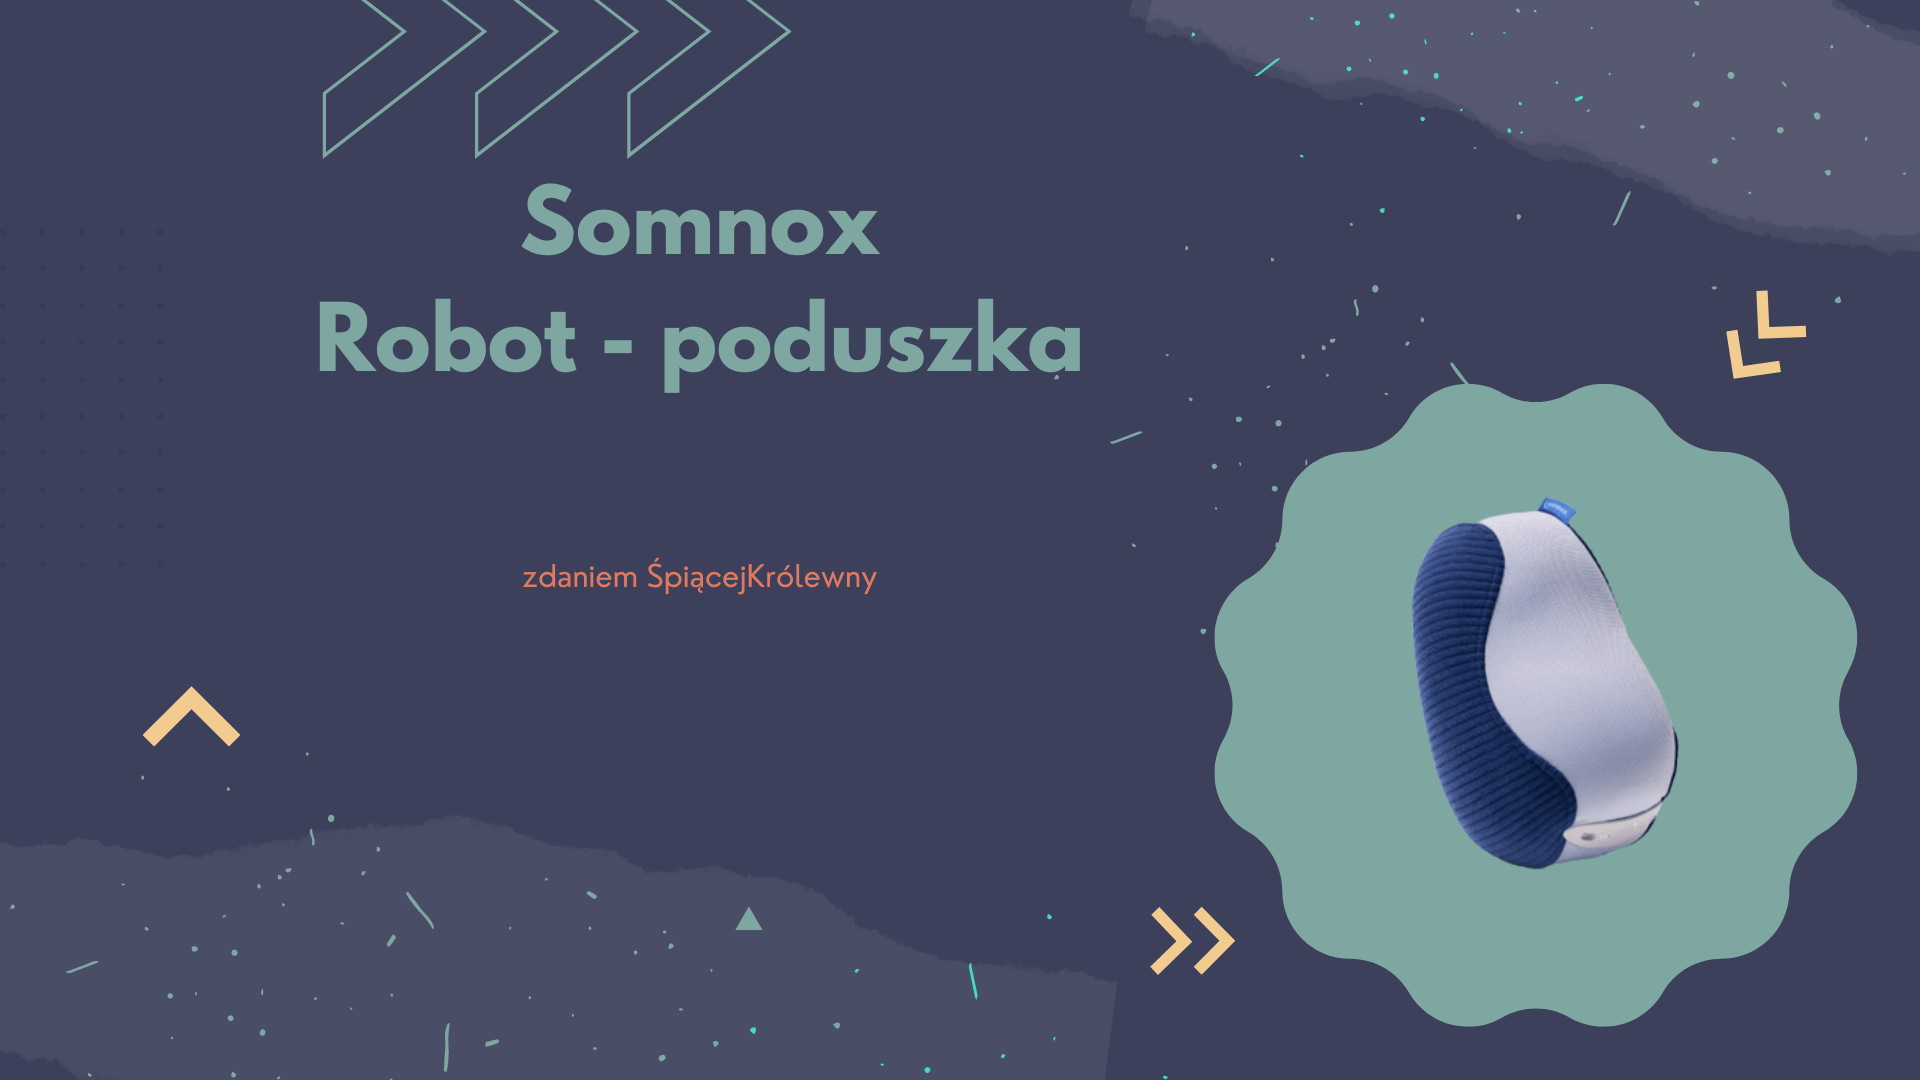 Somnox – robot poduszka